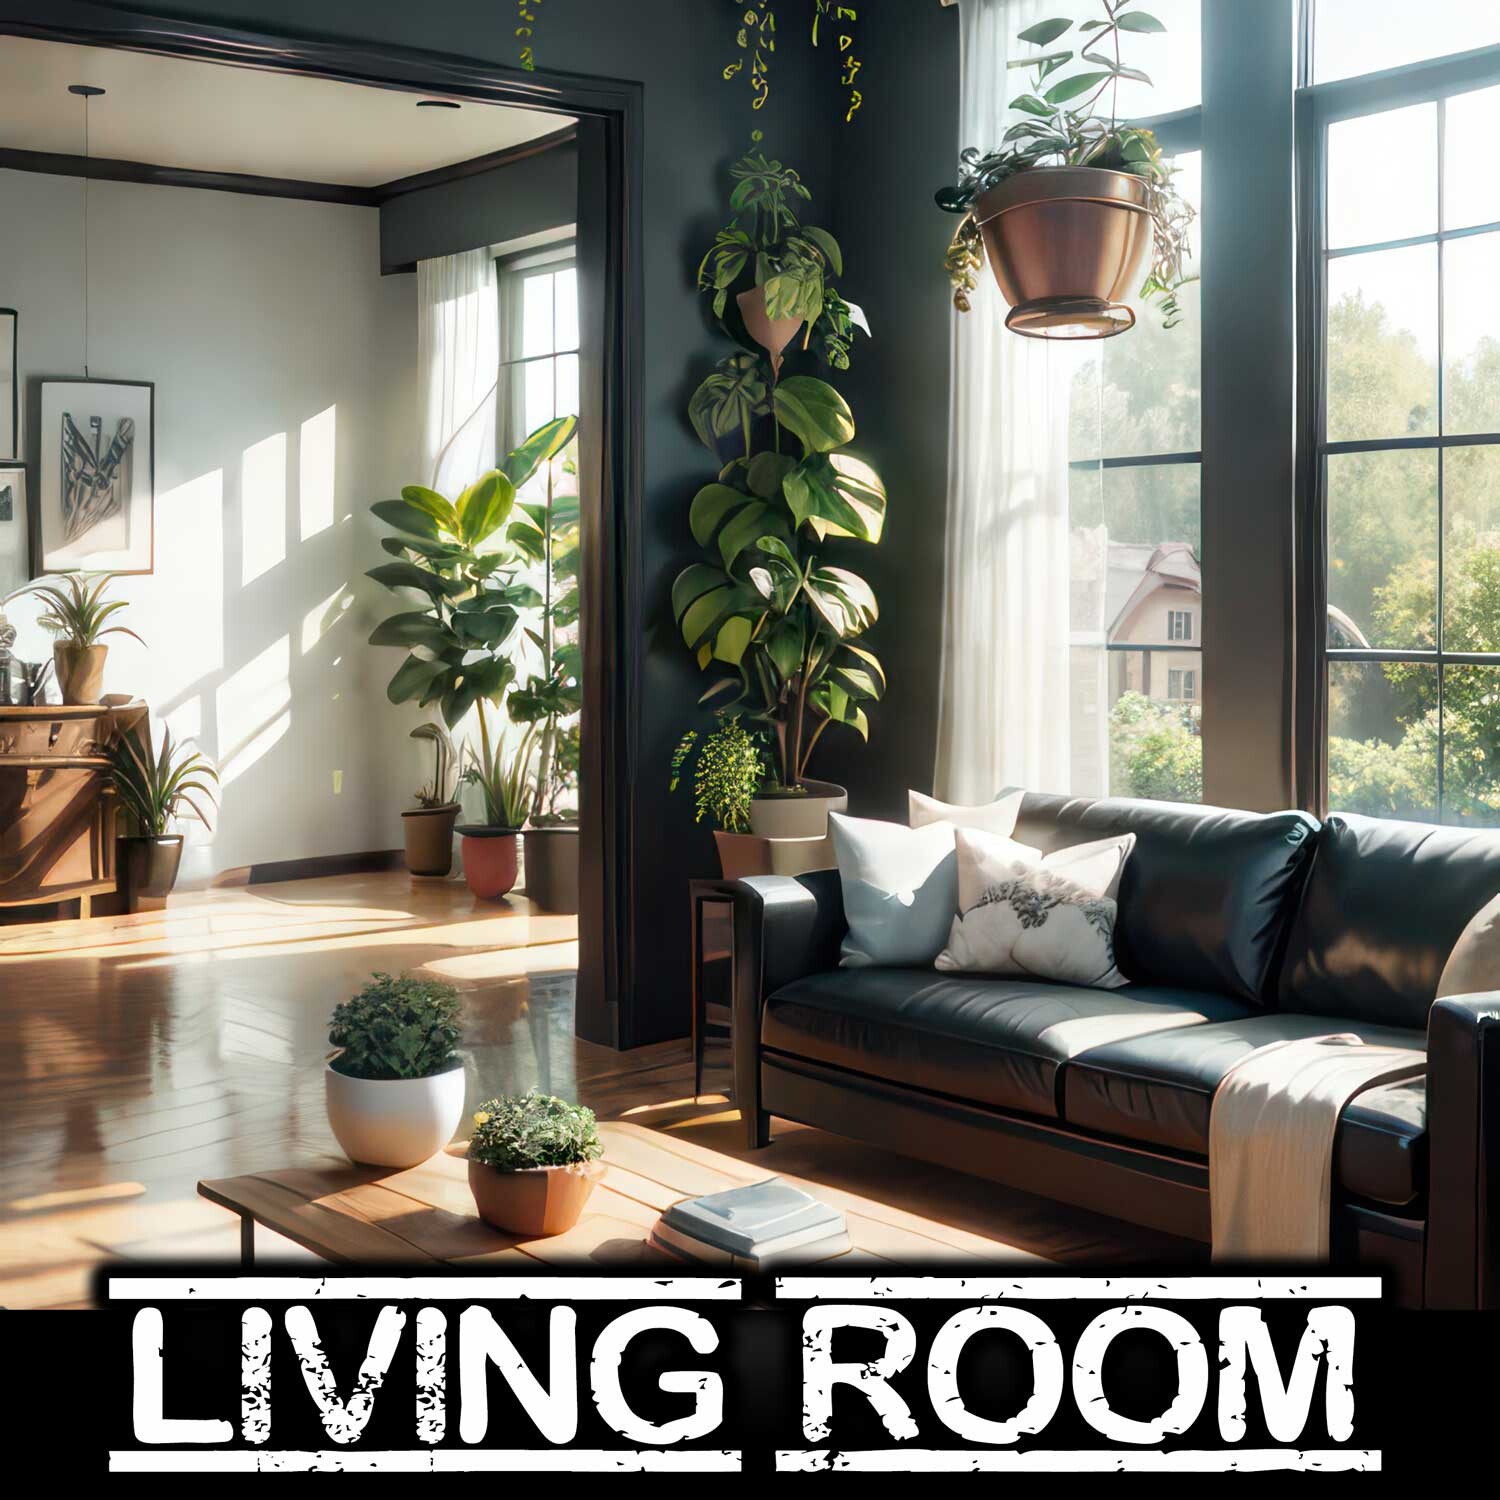 ArtStation - 300+ Living Room Images Reference Pack - 4K Resolution - V.01